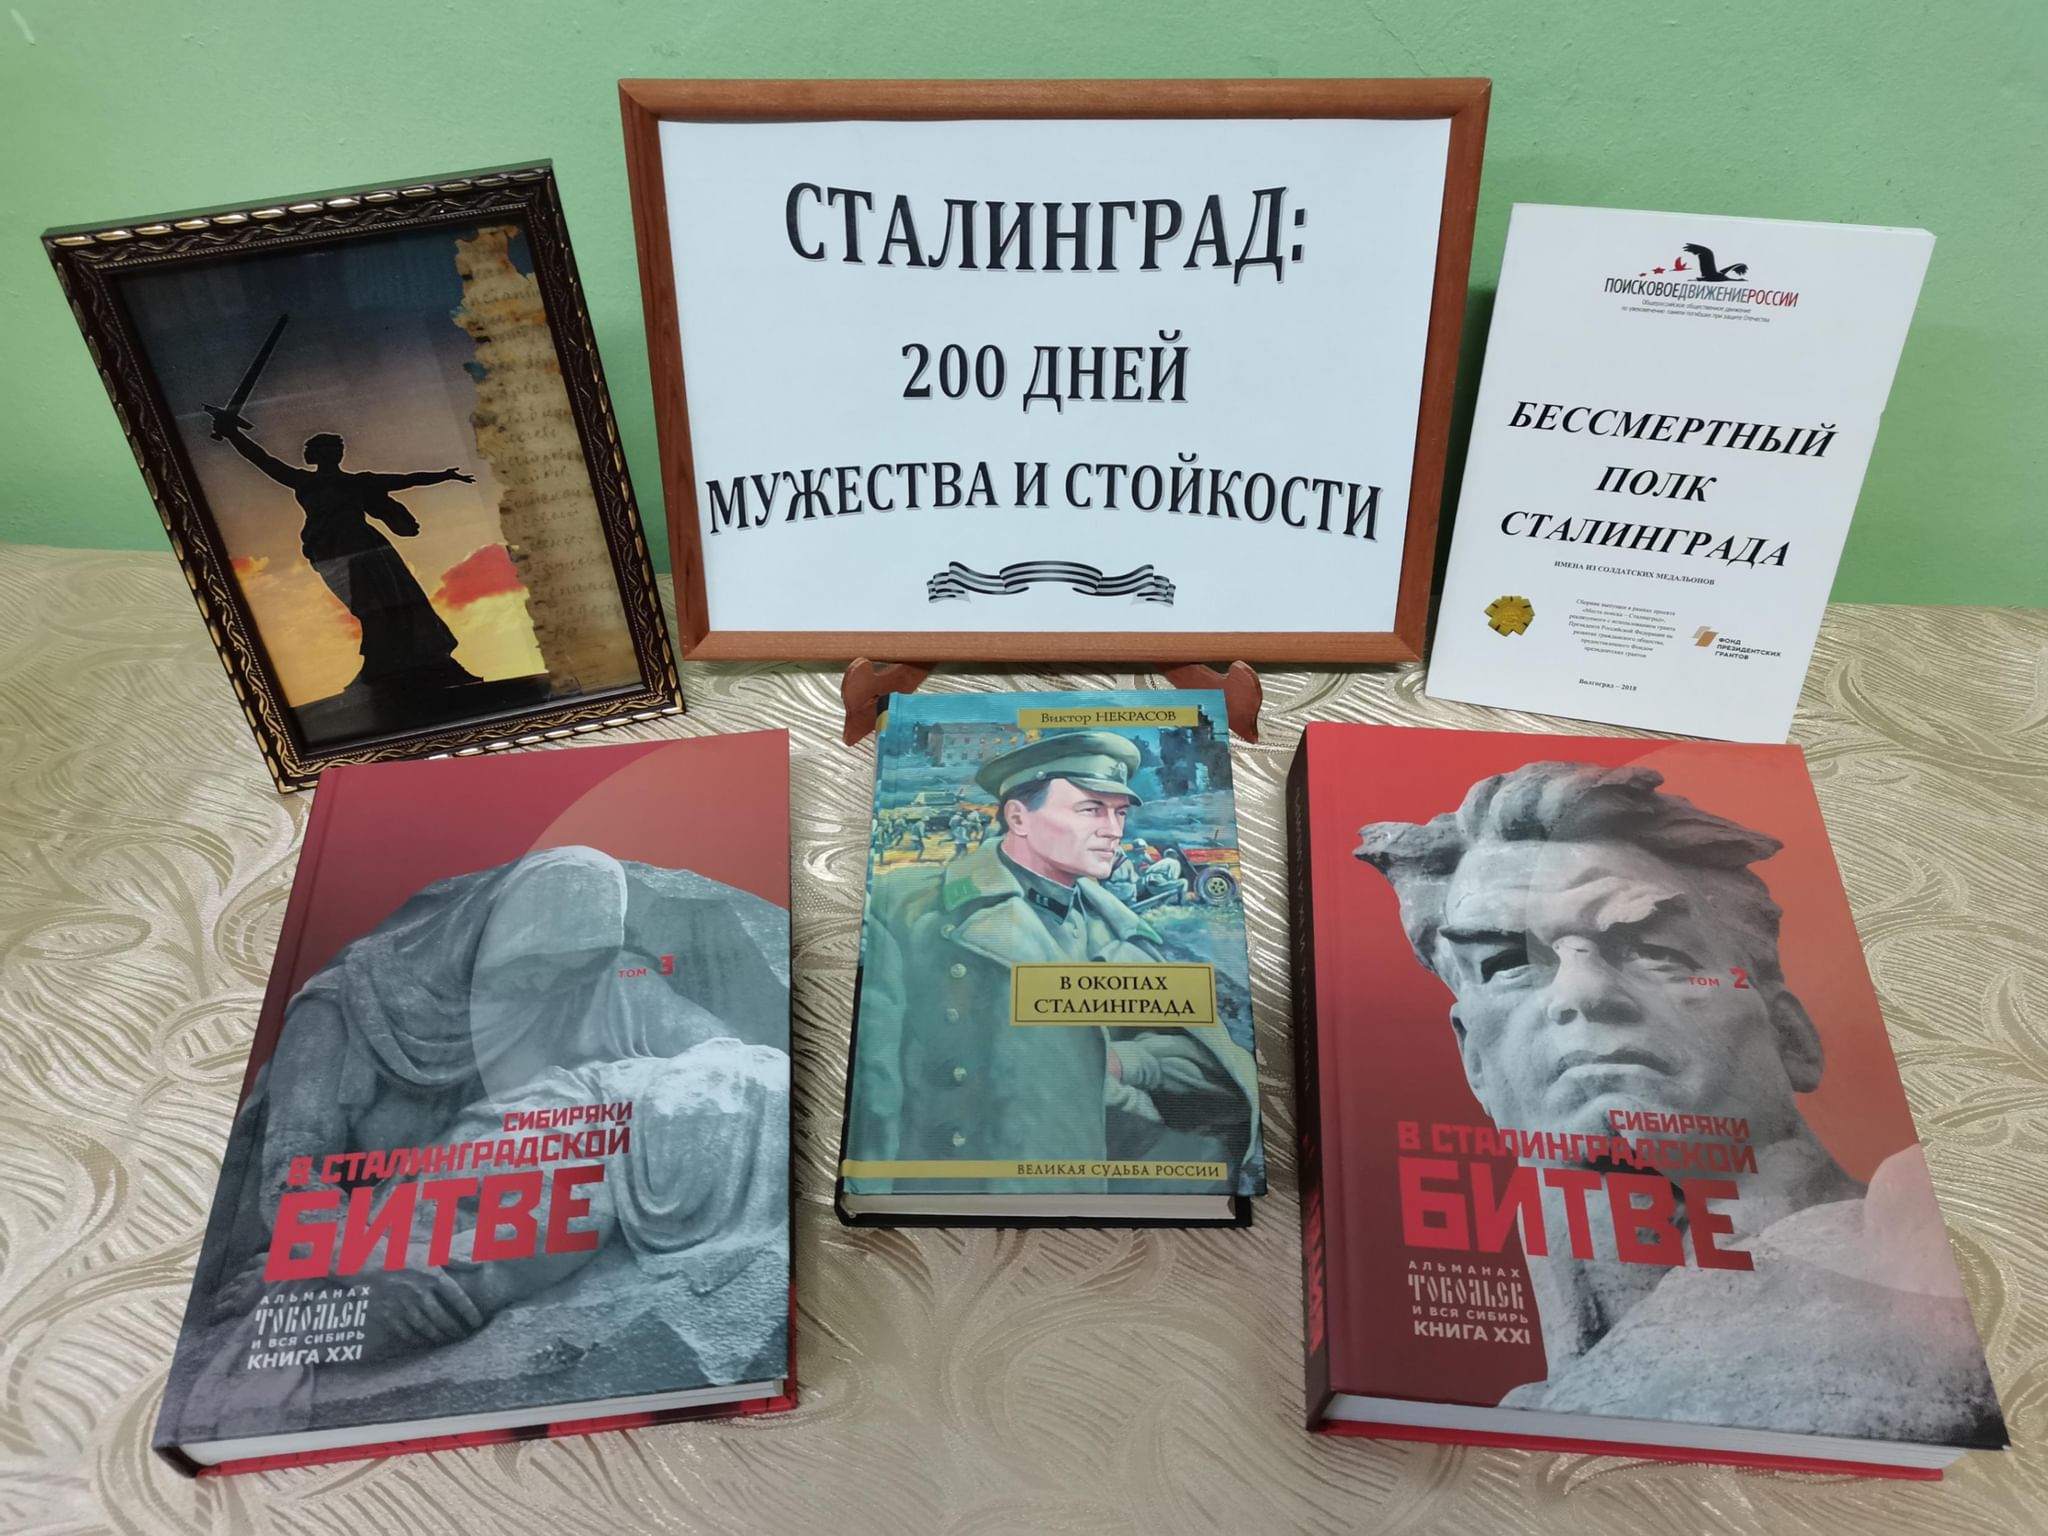 Сталинград 200 дней Мужества